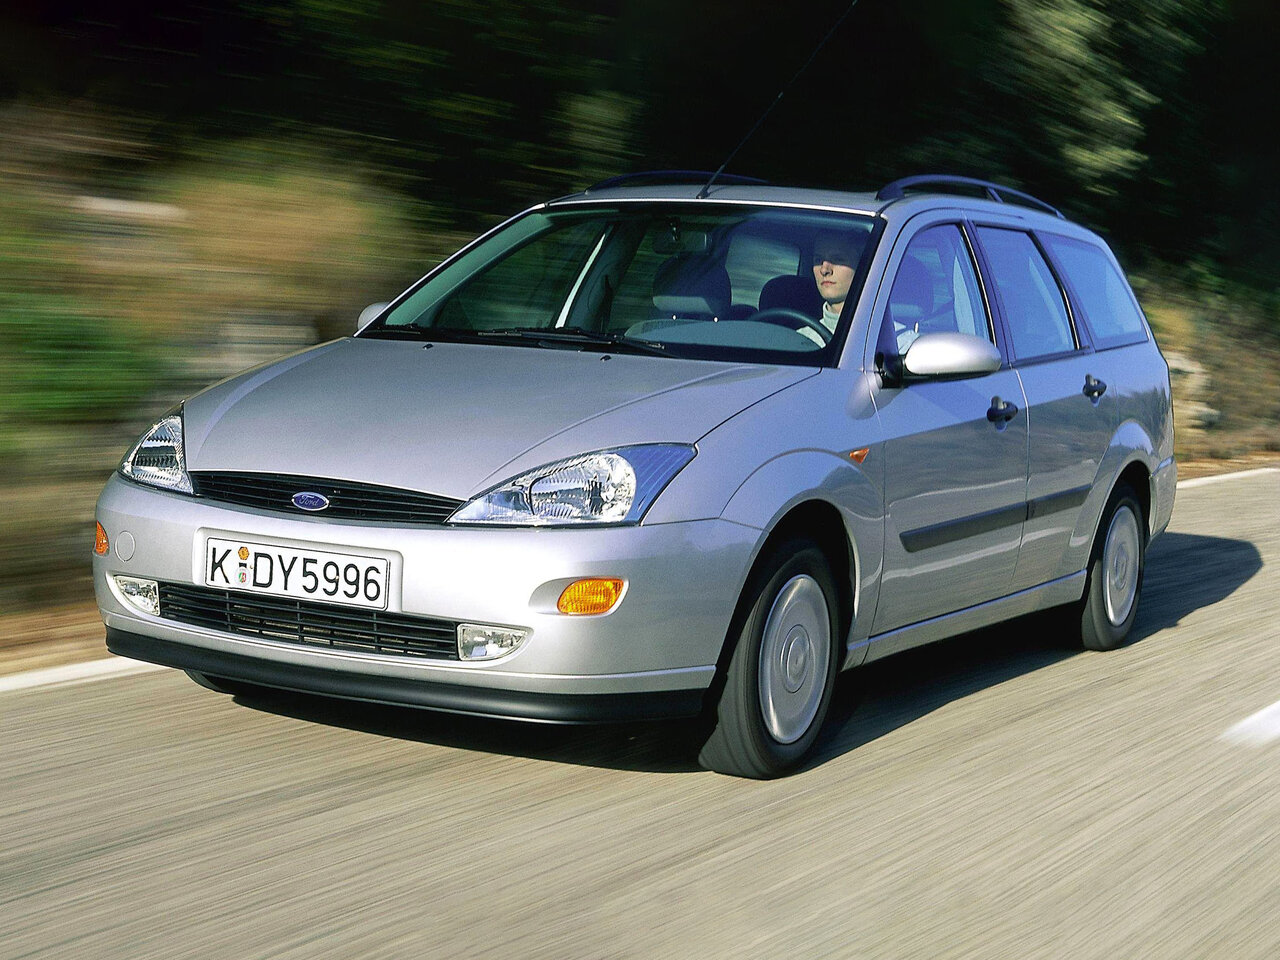 Форд фокус 1 дизель универсал. Форд фокус универсал 2001. Форд фокус универсал 1999. Форд фокус 1998 – 2001. Форд фокус универсал 2001 года.